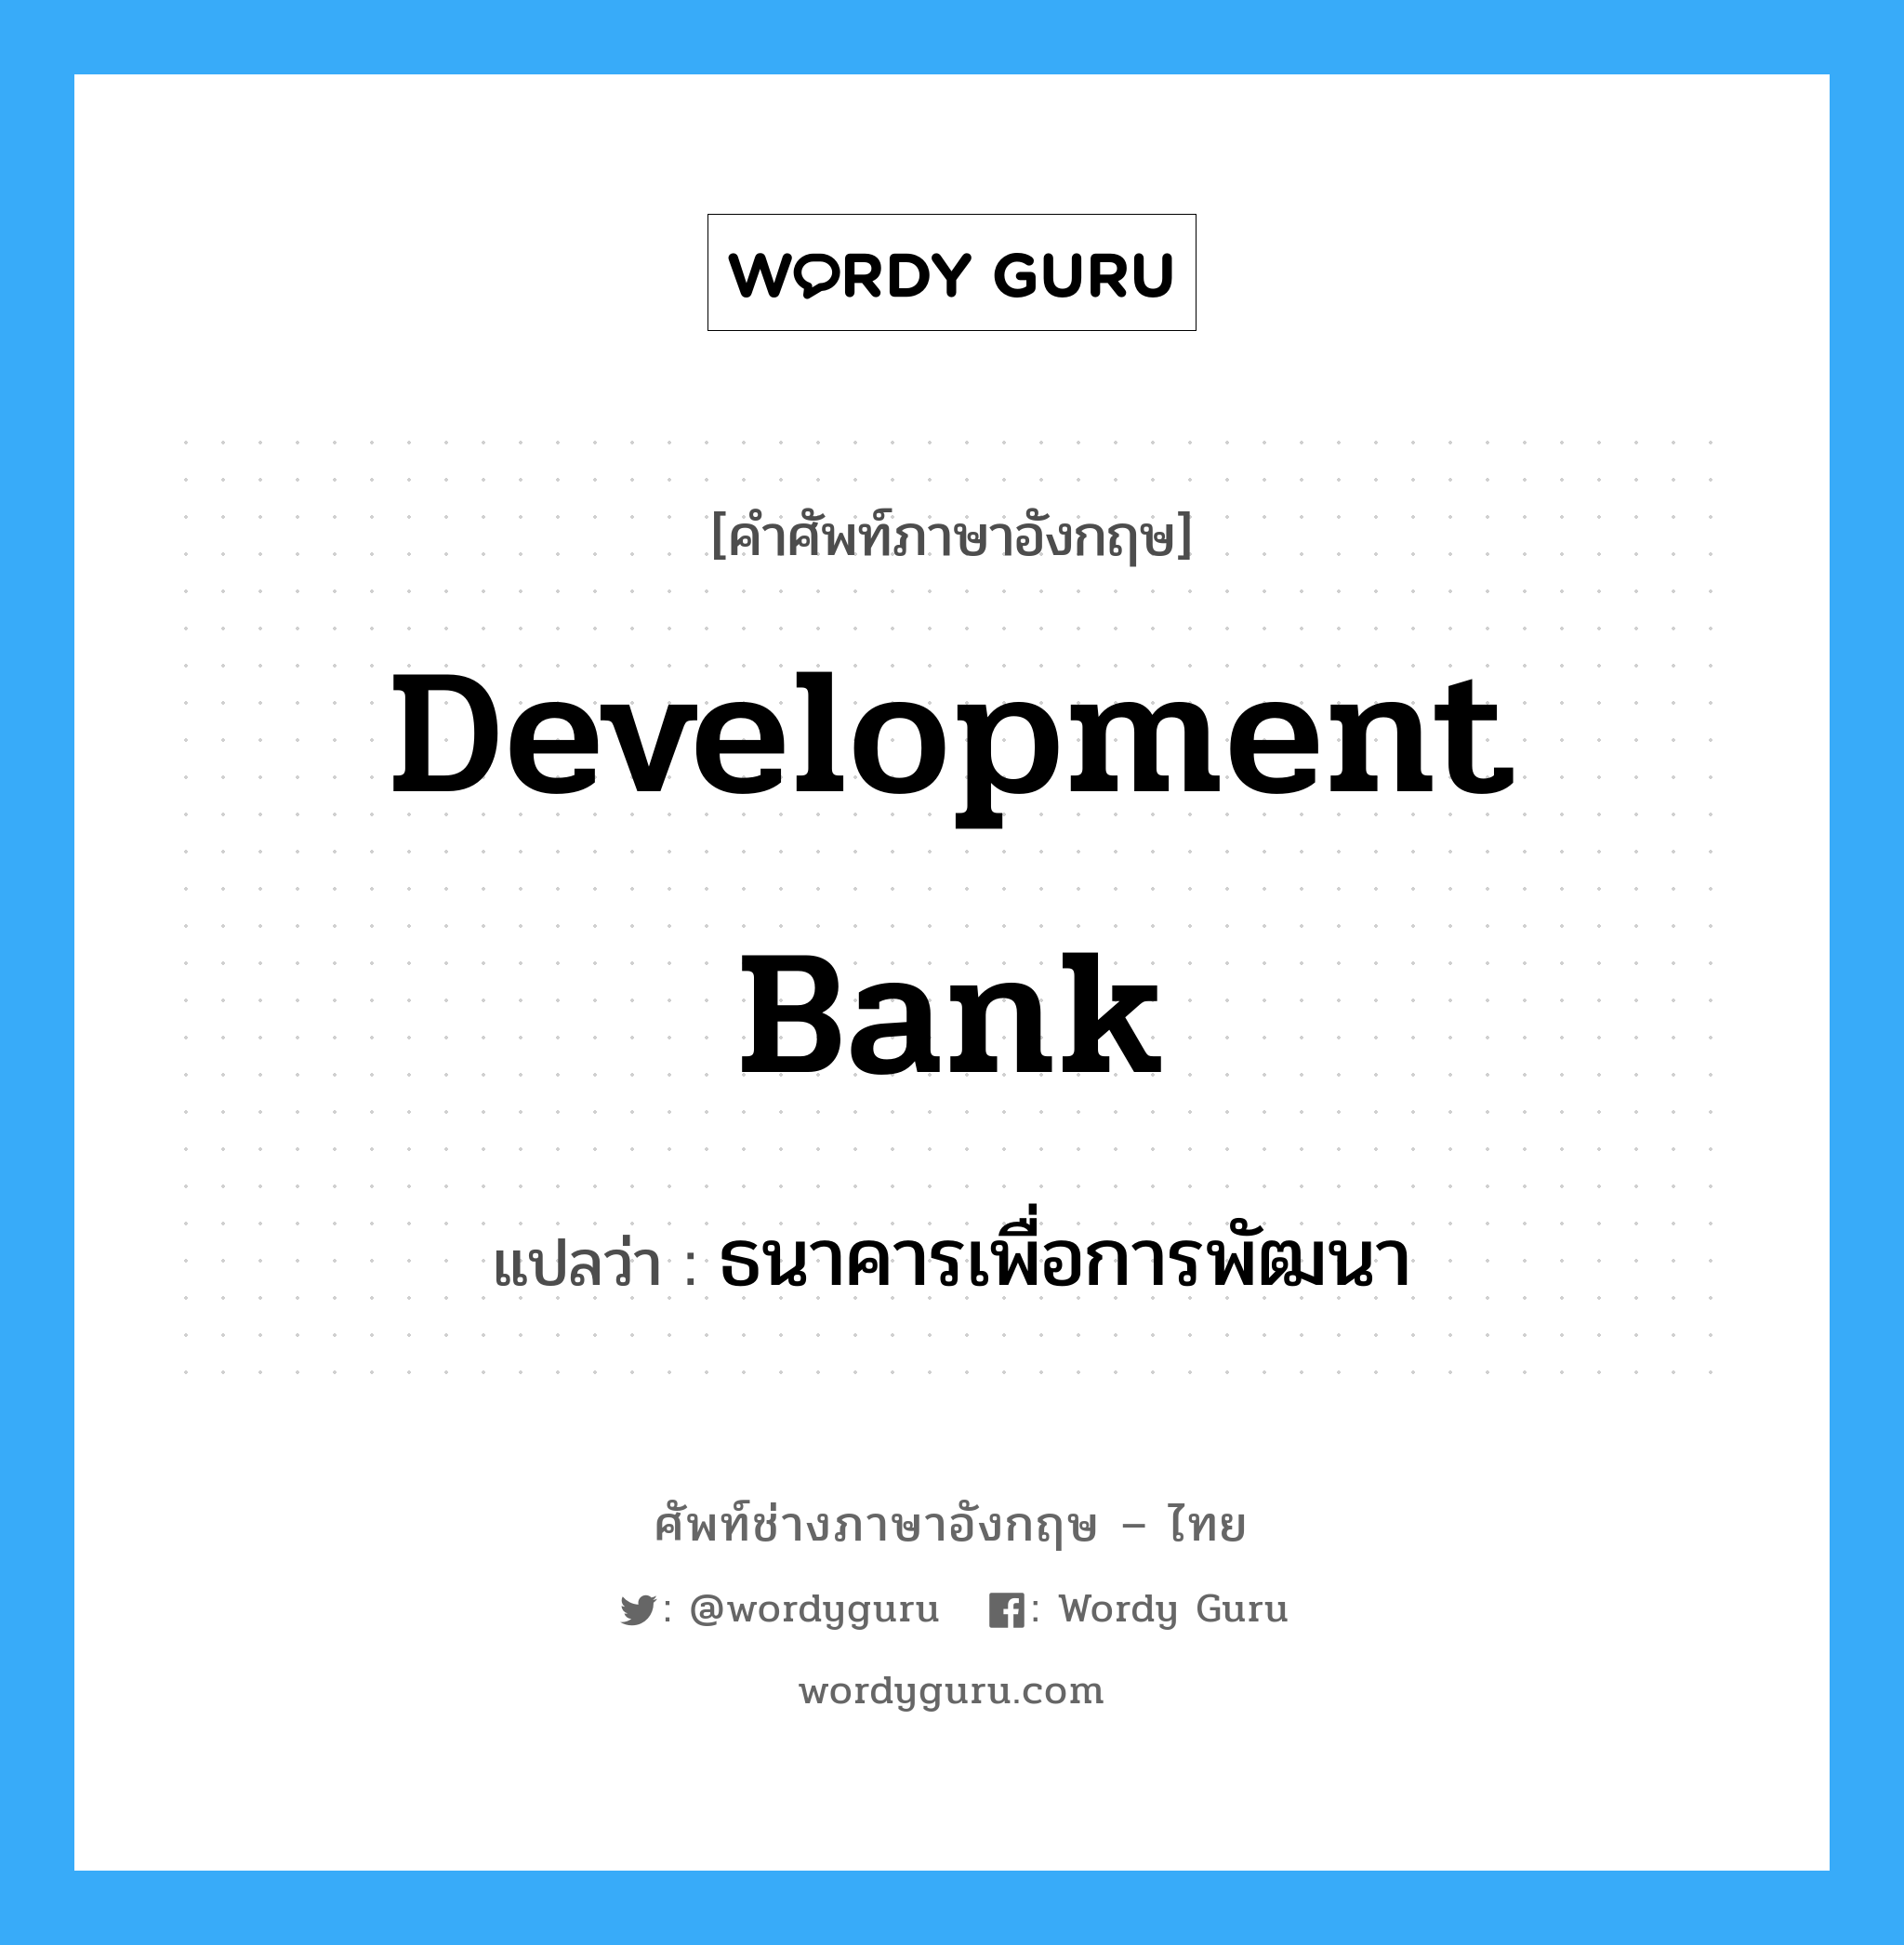 ธนาคารเพื่อการพัฒนา ภาษาอังกฤษ?, คำศัพท์ช่างภาษาอังกฤษ - ไทย ธนาคารเพื่อการพัฒนา คำศัพท์ภาษาอังกฤษ ธนาคารเพื่อการพัฒนา แปลว่า Development Bank